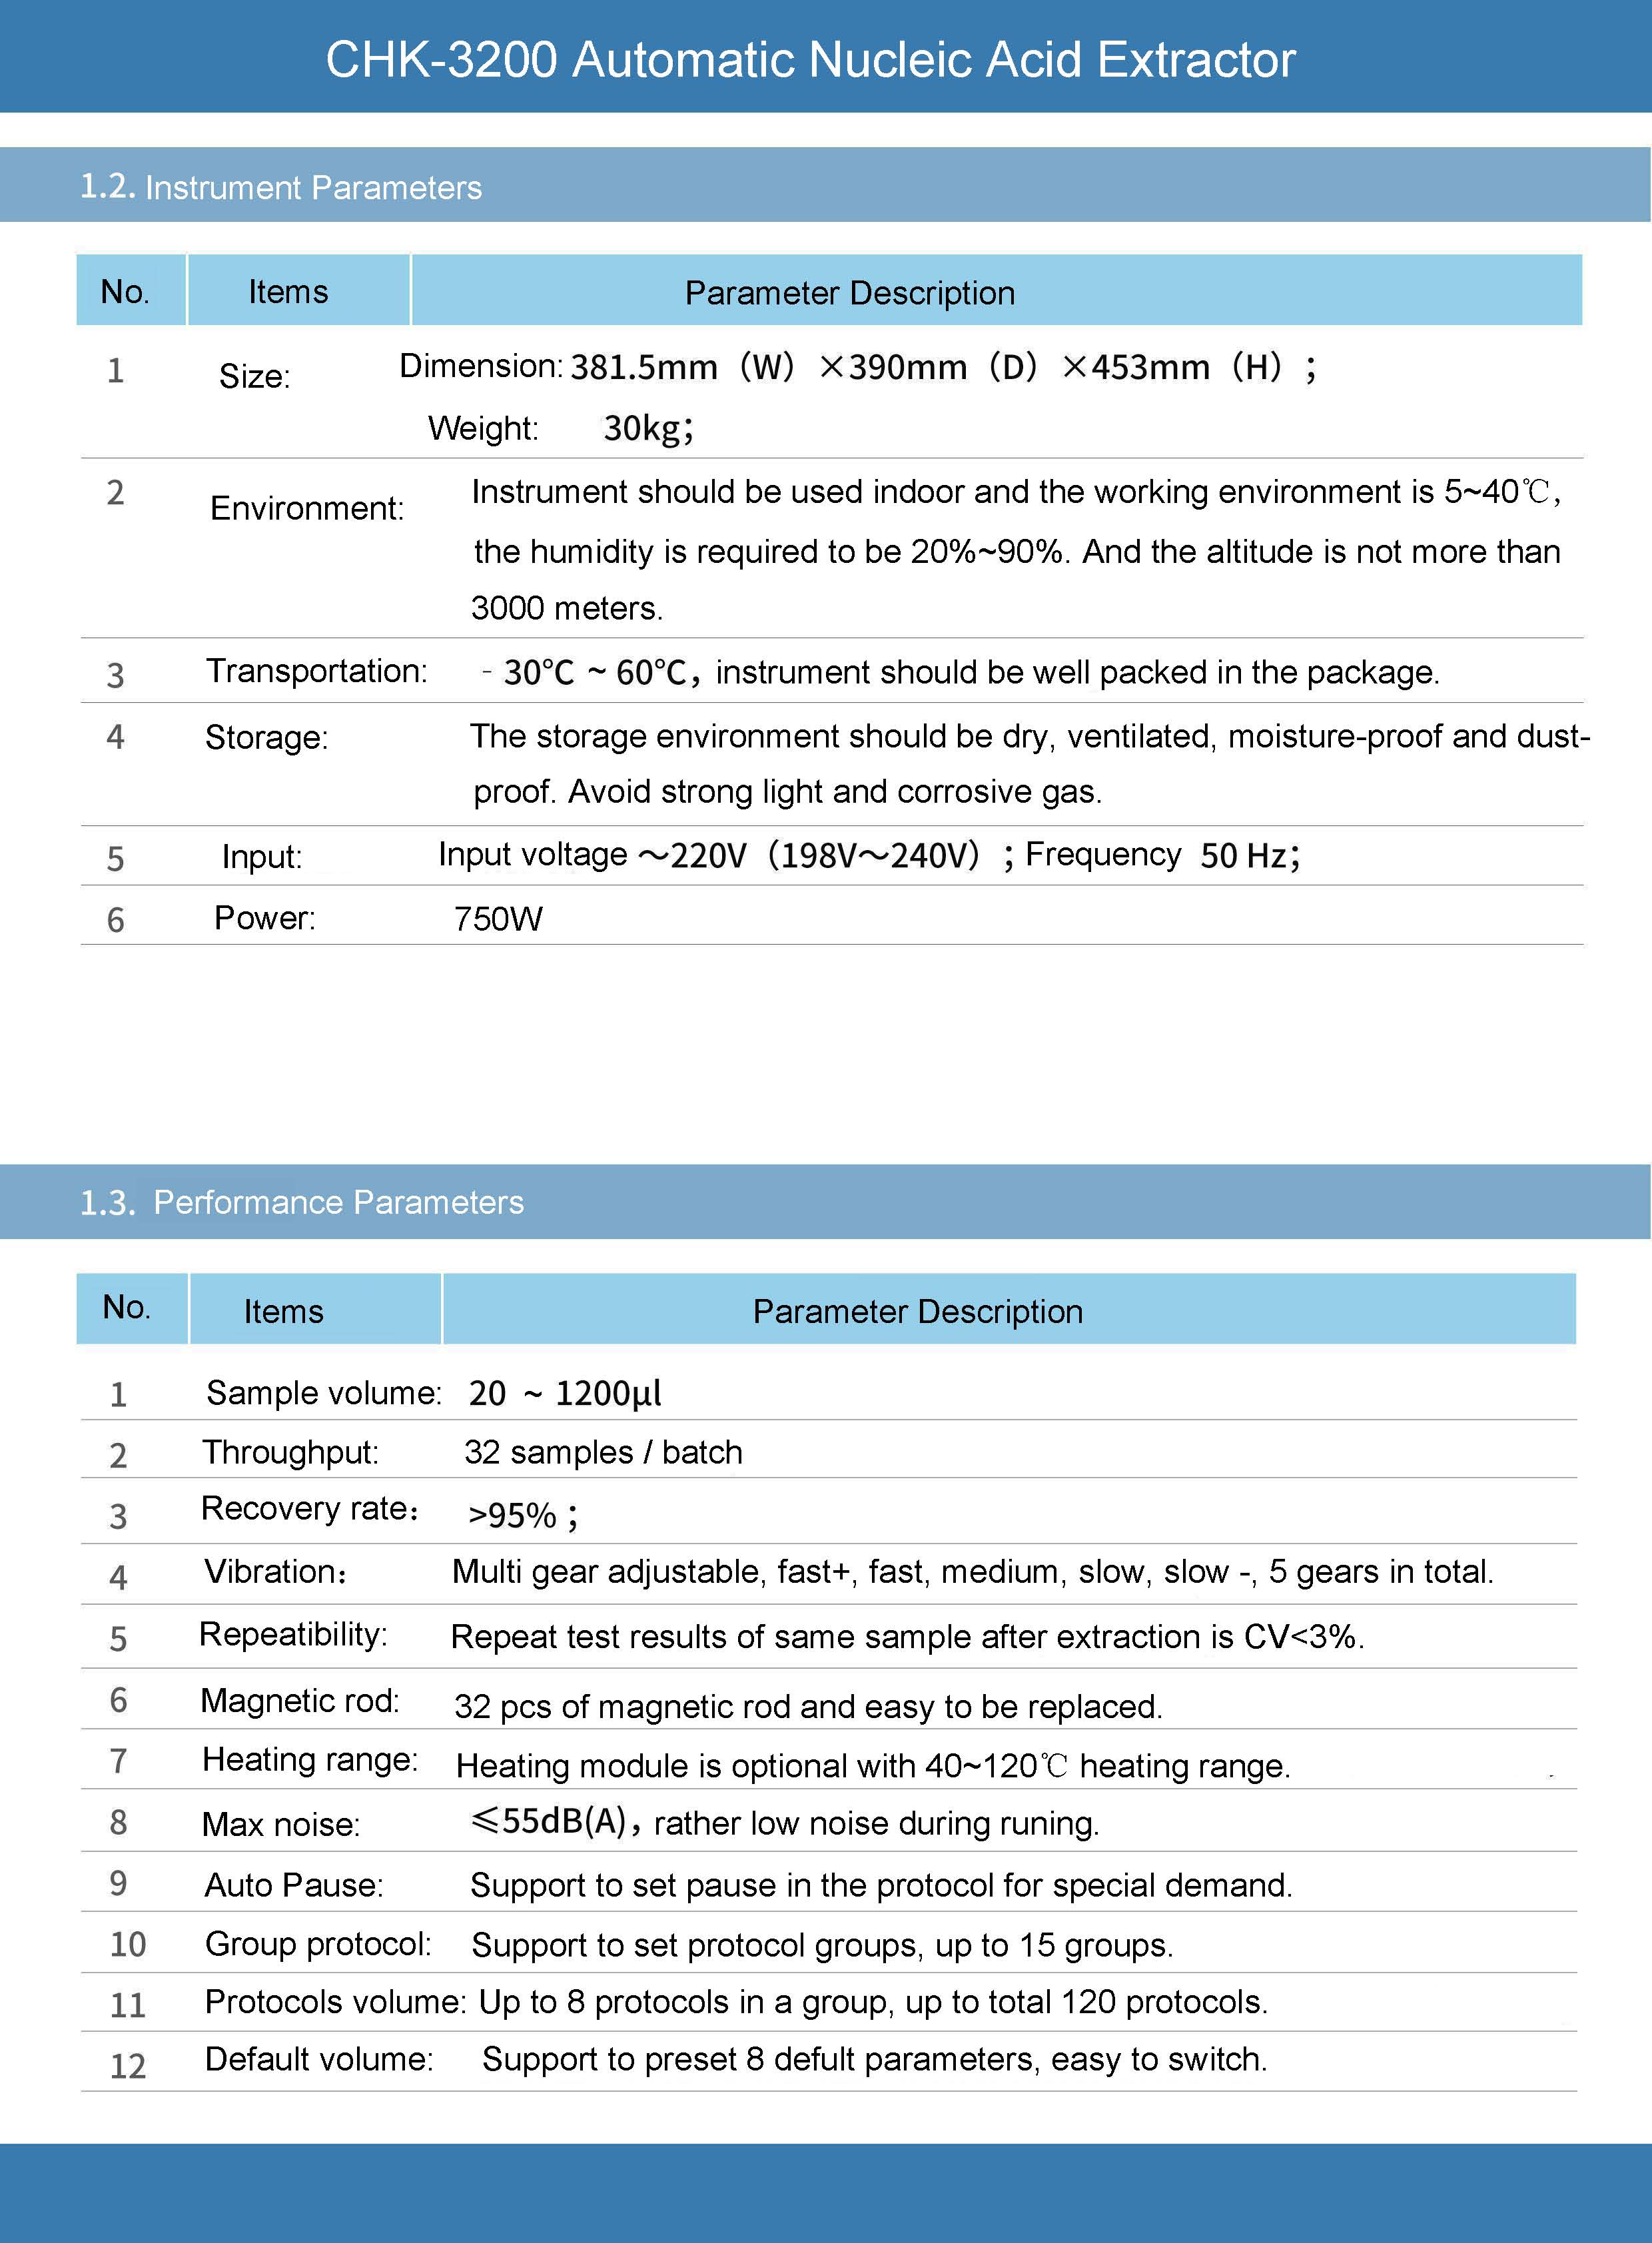 CHK-3200 Нуклейн хүчил олборлогч-Флайер_页面_2